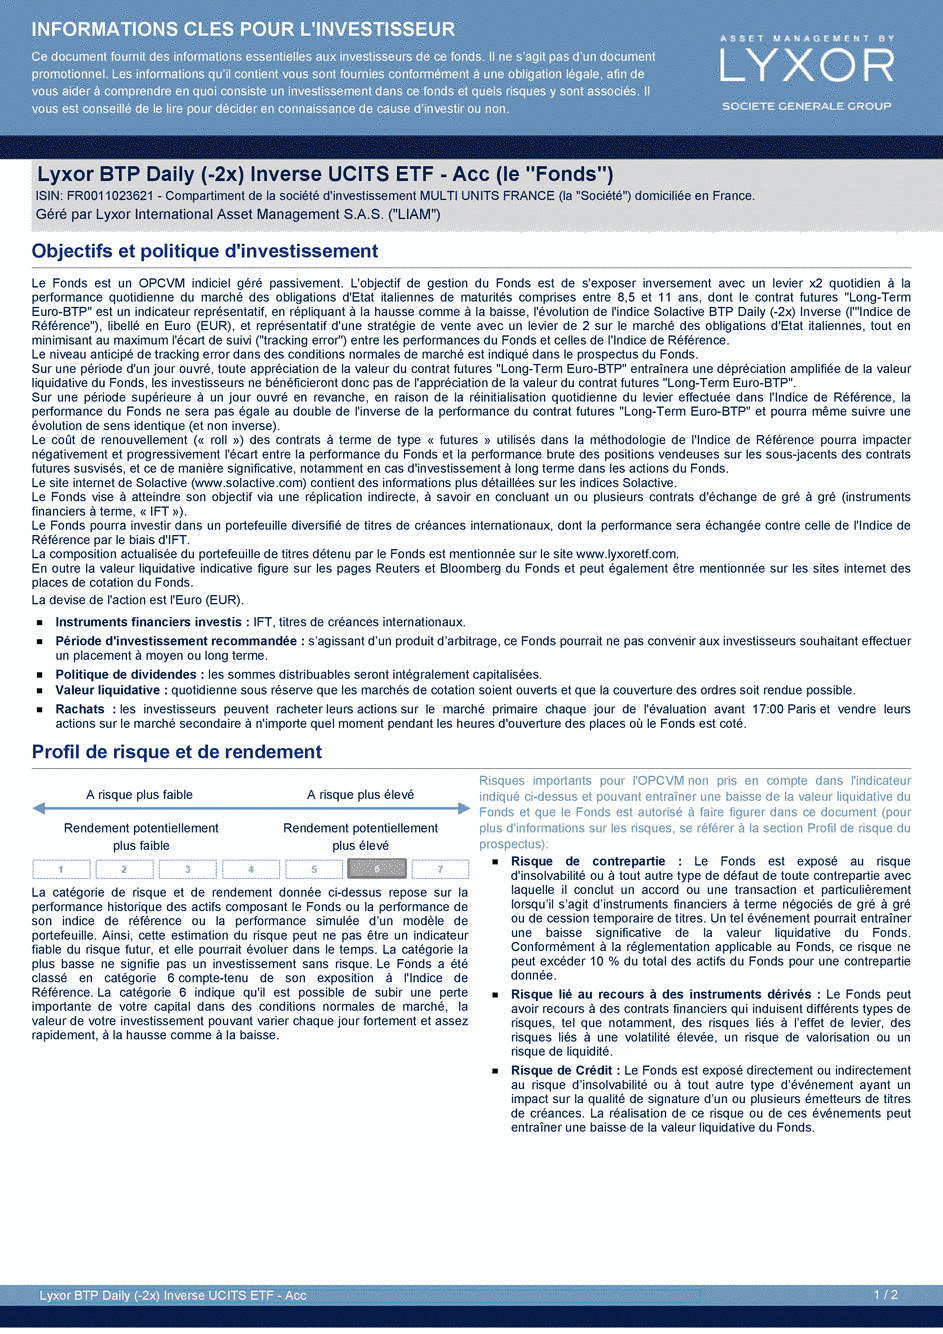 DICI Lyxor BTP Daily (-2x) Inverse UCITS ETF - Acc - 19/02/2020 - Français